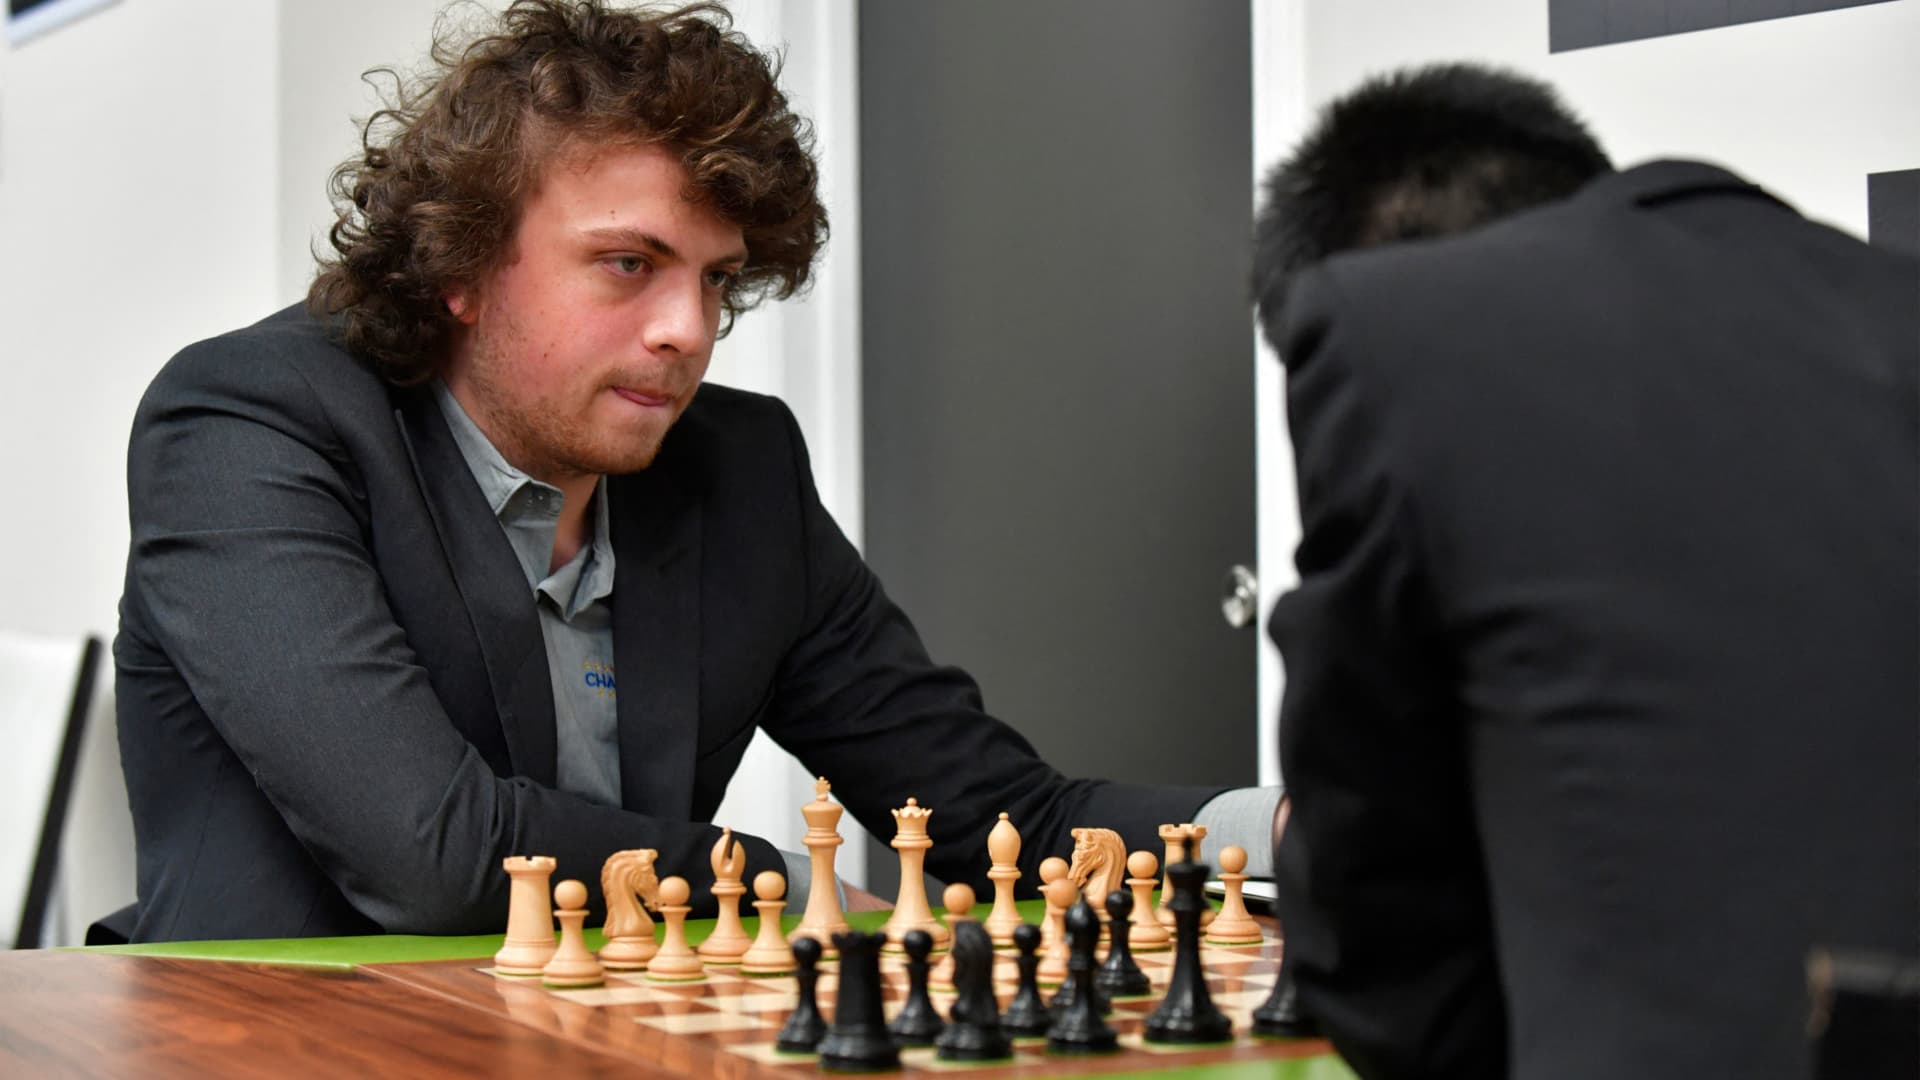 Hans Niemann poursuit Magnus Carlsen et d’autres pour 100 millions de dollars pour des allégations de tricherie aux échecs